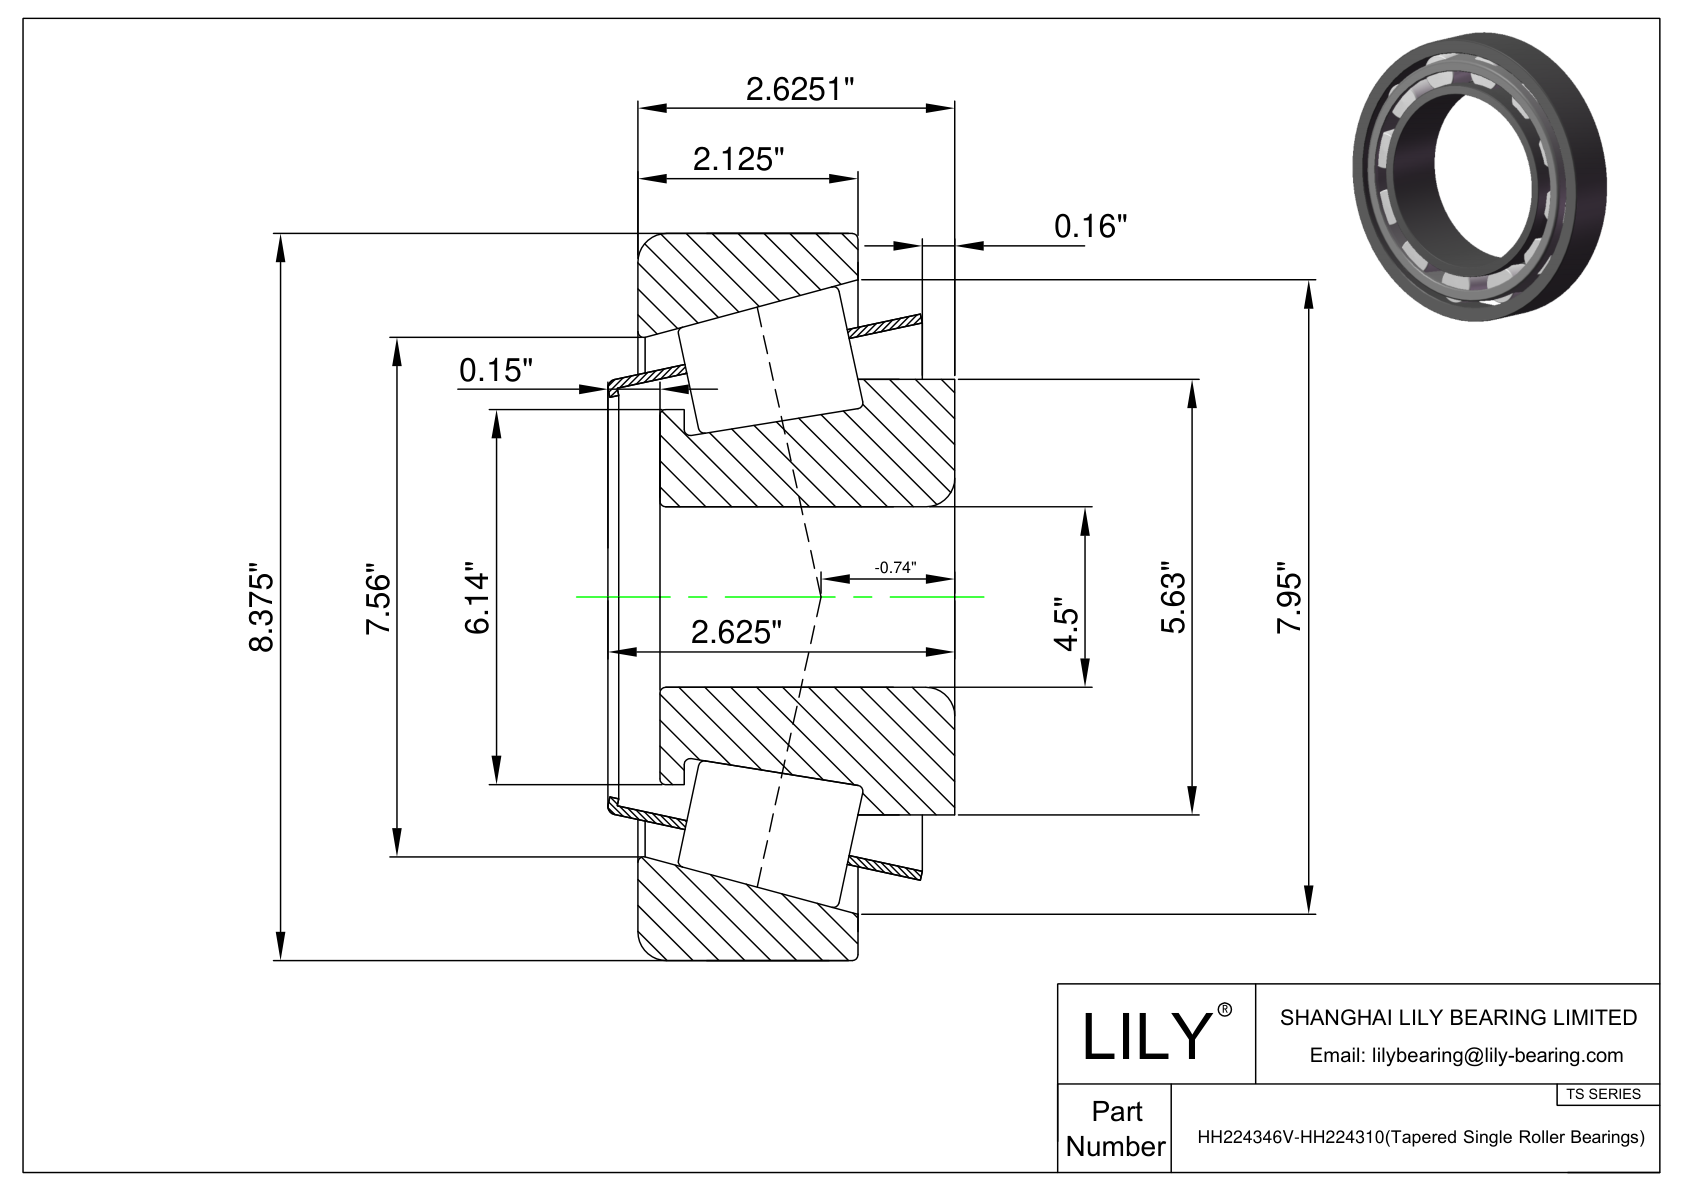 HH224346V-HH224310 TS系列(圆锥单滚子轴承)(英制) CAD图形